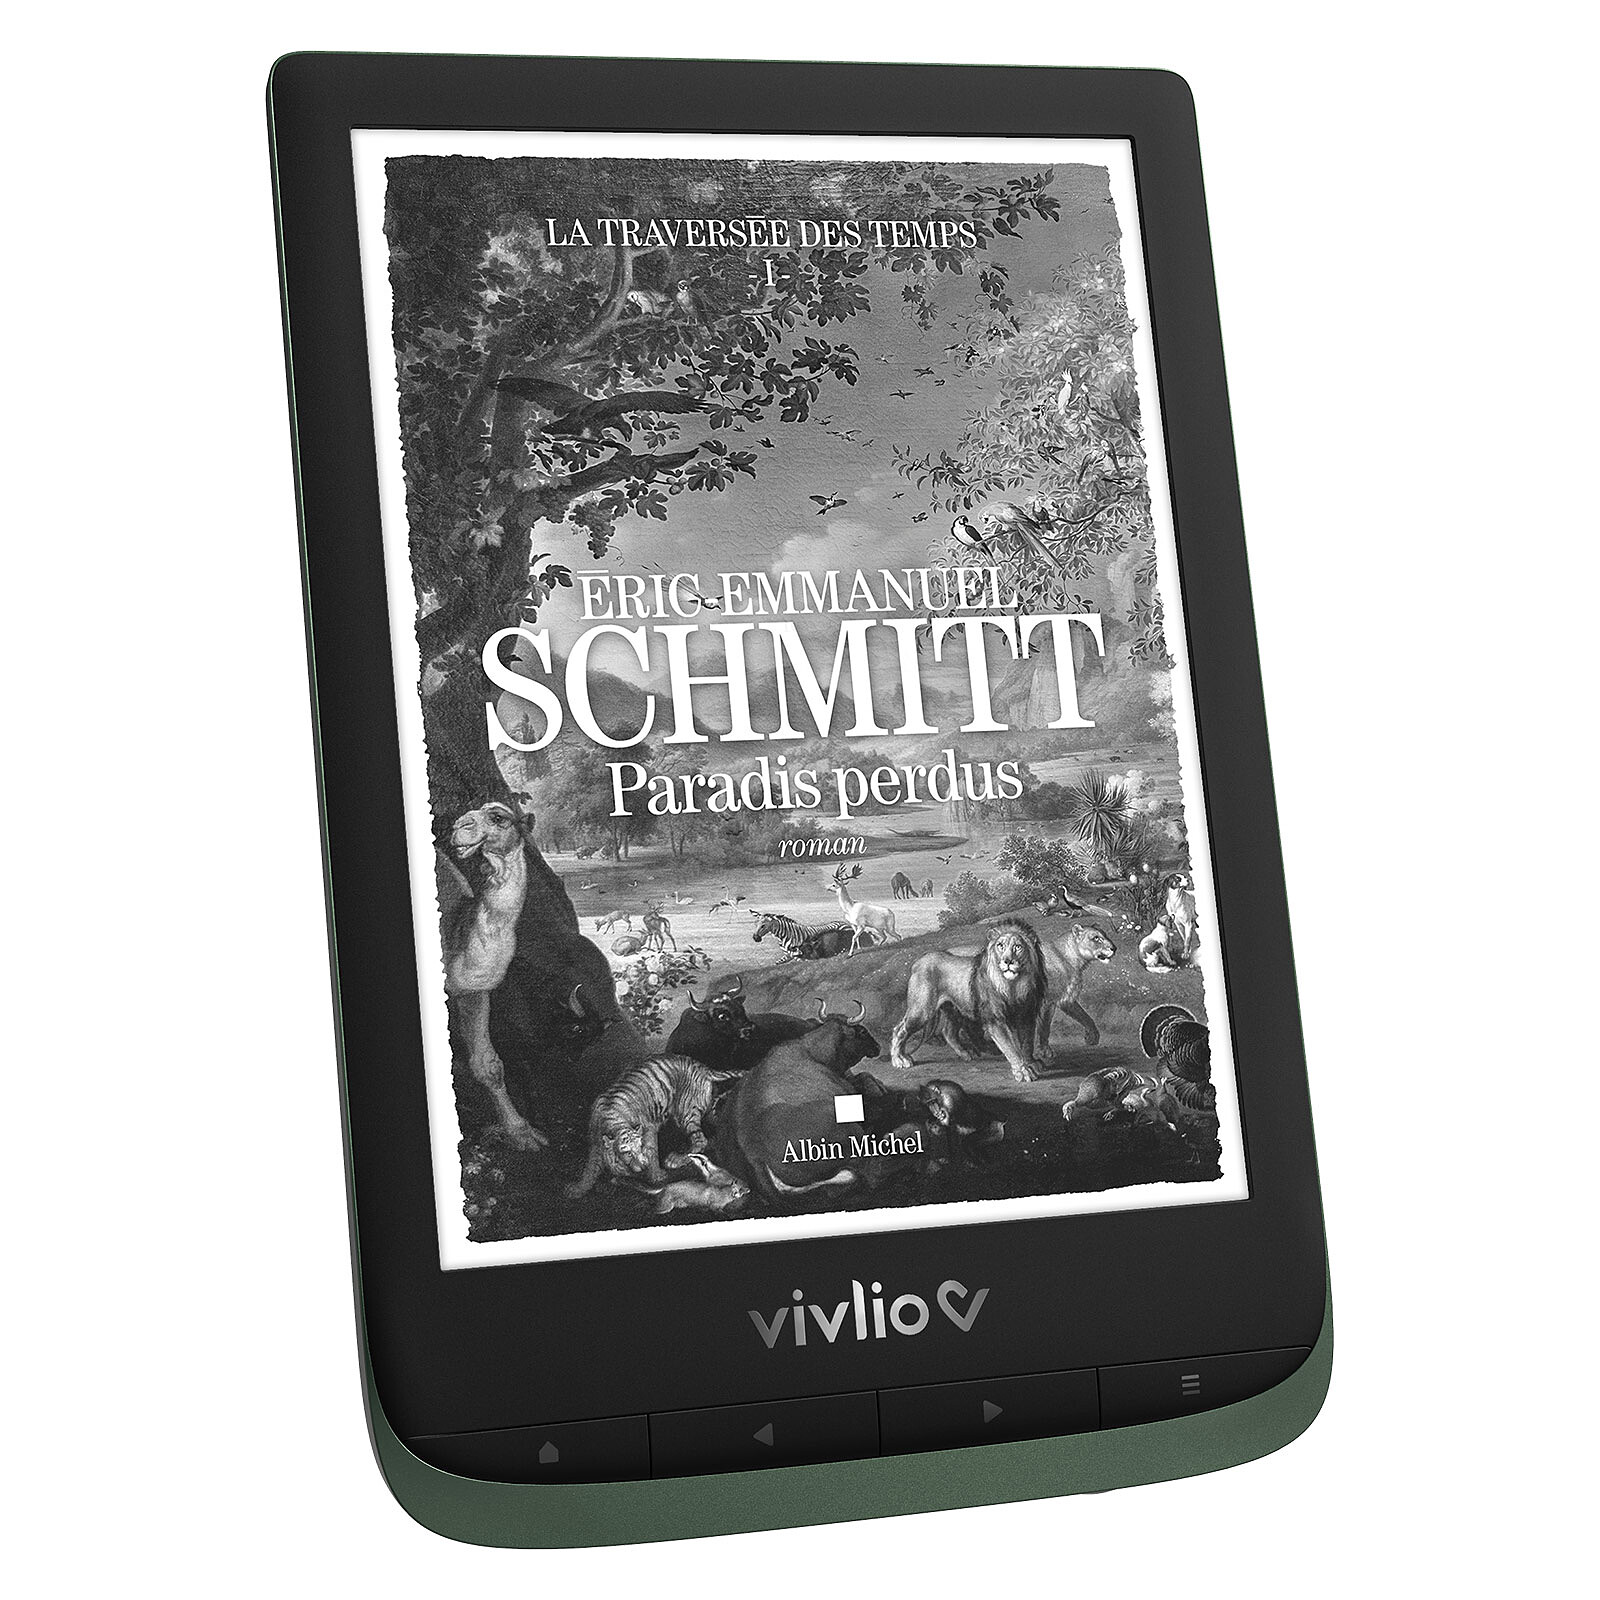 Vivlio Touch HD Plus Edition Limitée - Liseuse eBook - Garantie 3 ans LDLC